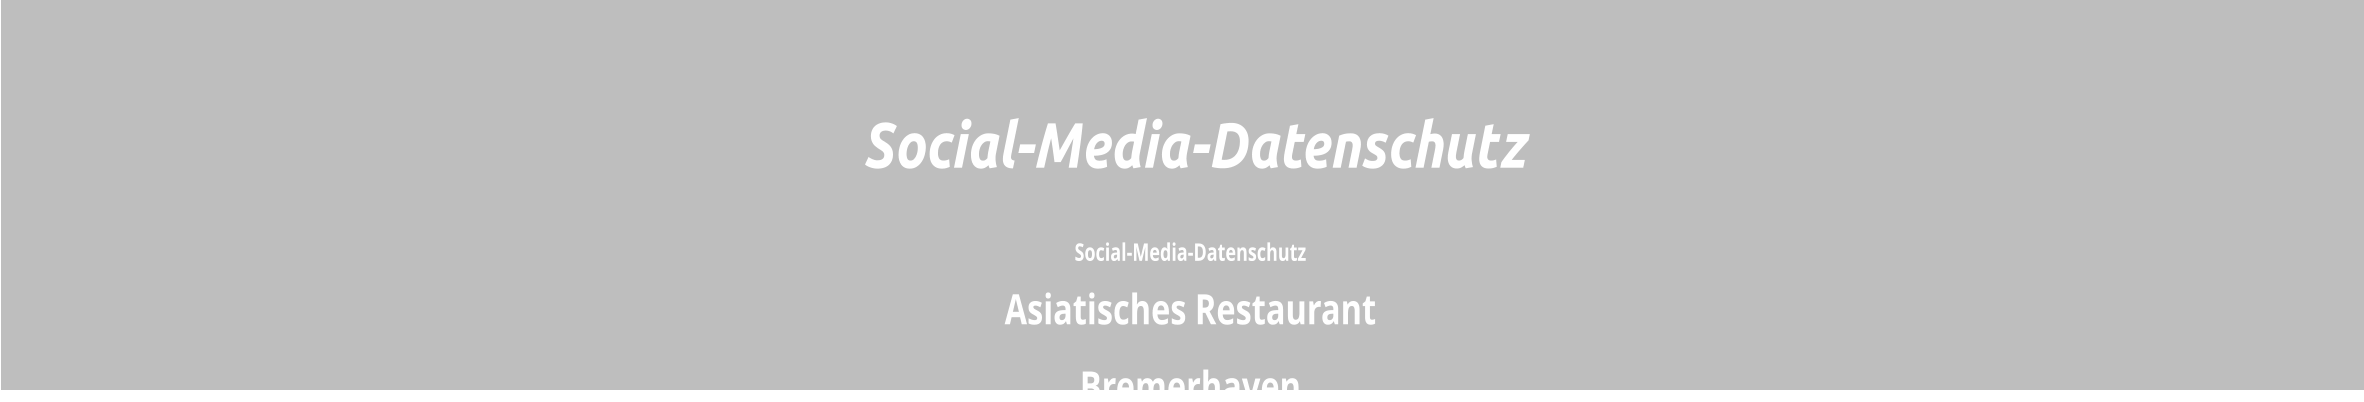 Social-Media-Datenschutz  Asiatisches Restaurant  Bremerhaven  Social-Media-Datenschutz